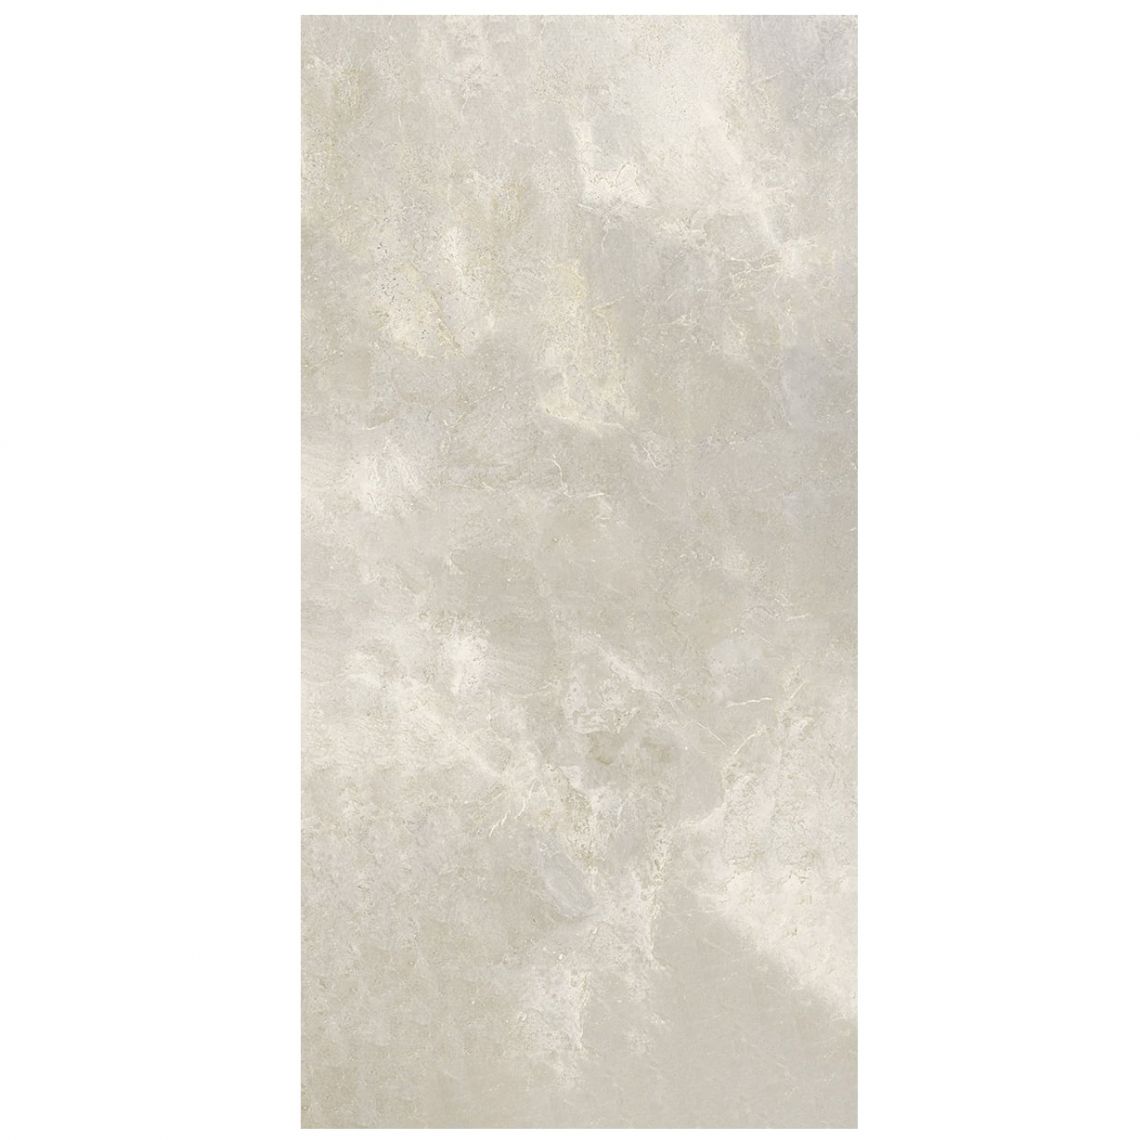 Керамогранит Fiandre, Aion Maximum, White Aion, Naturale 150x150 6mm (MMS27761515) - Фото 1